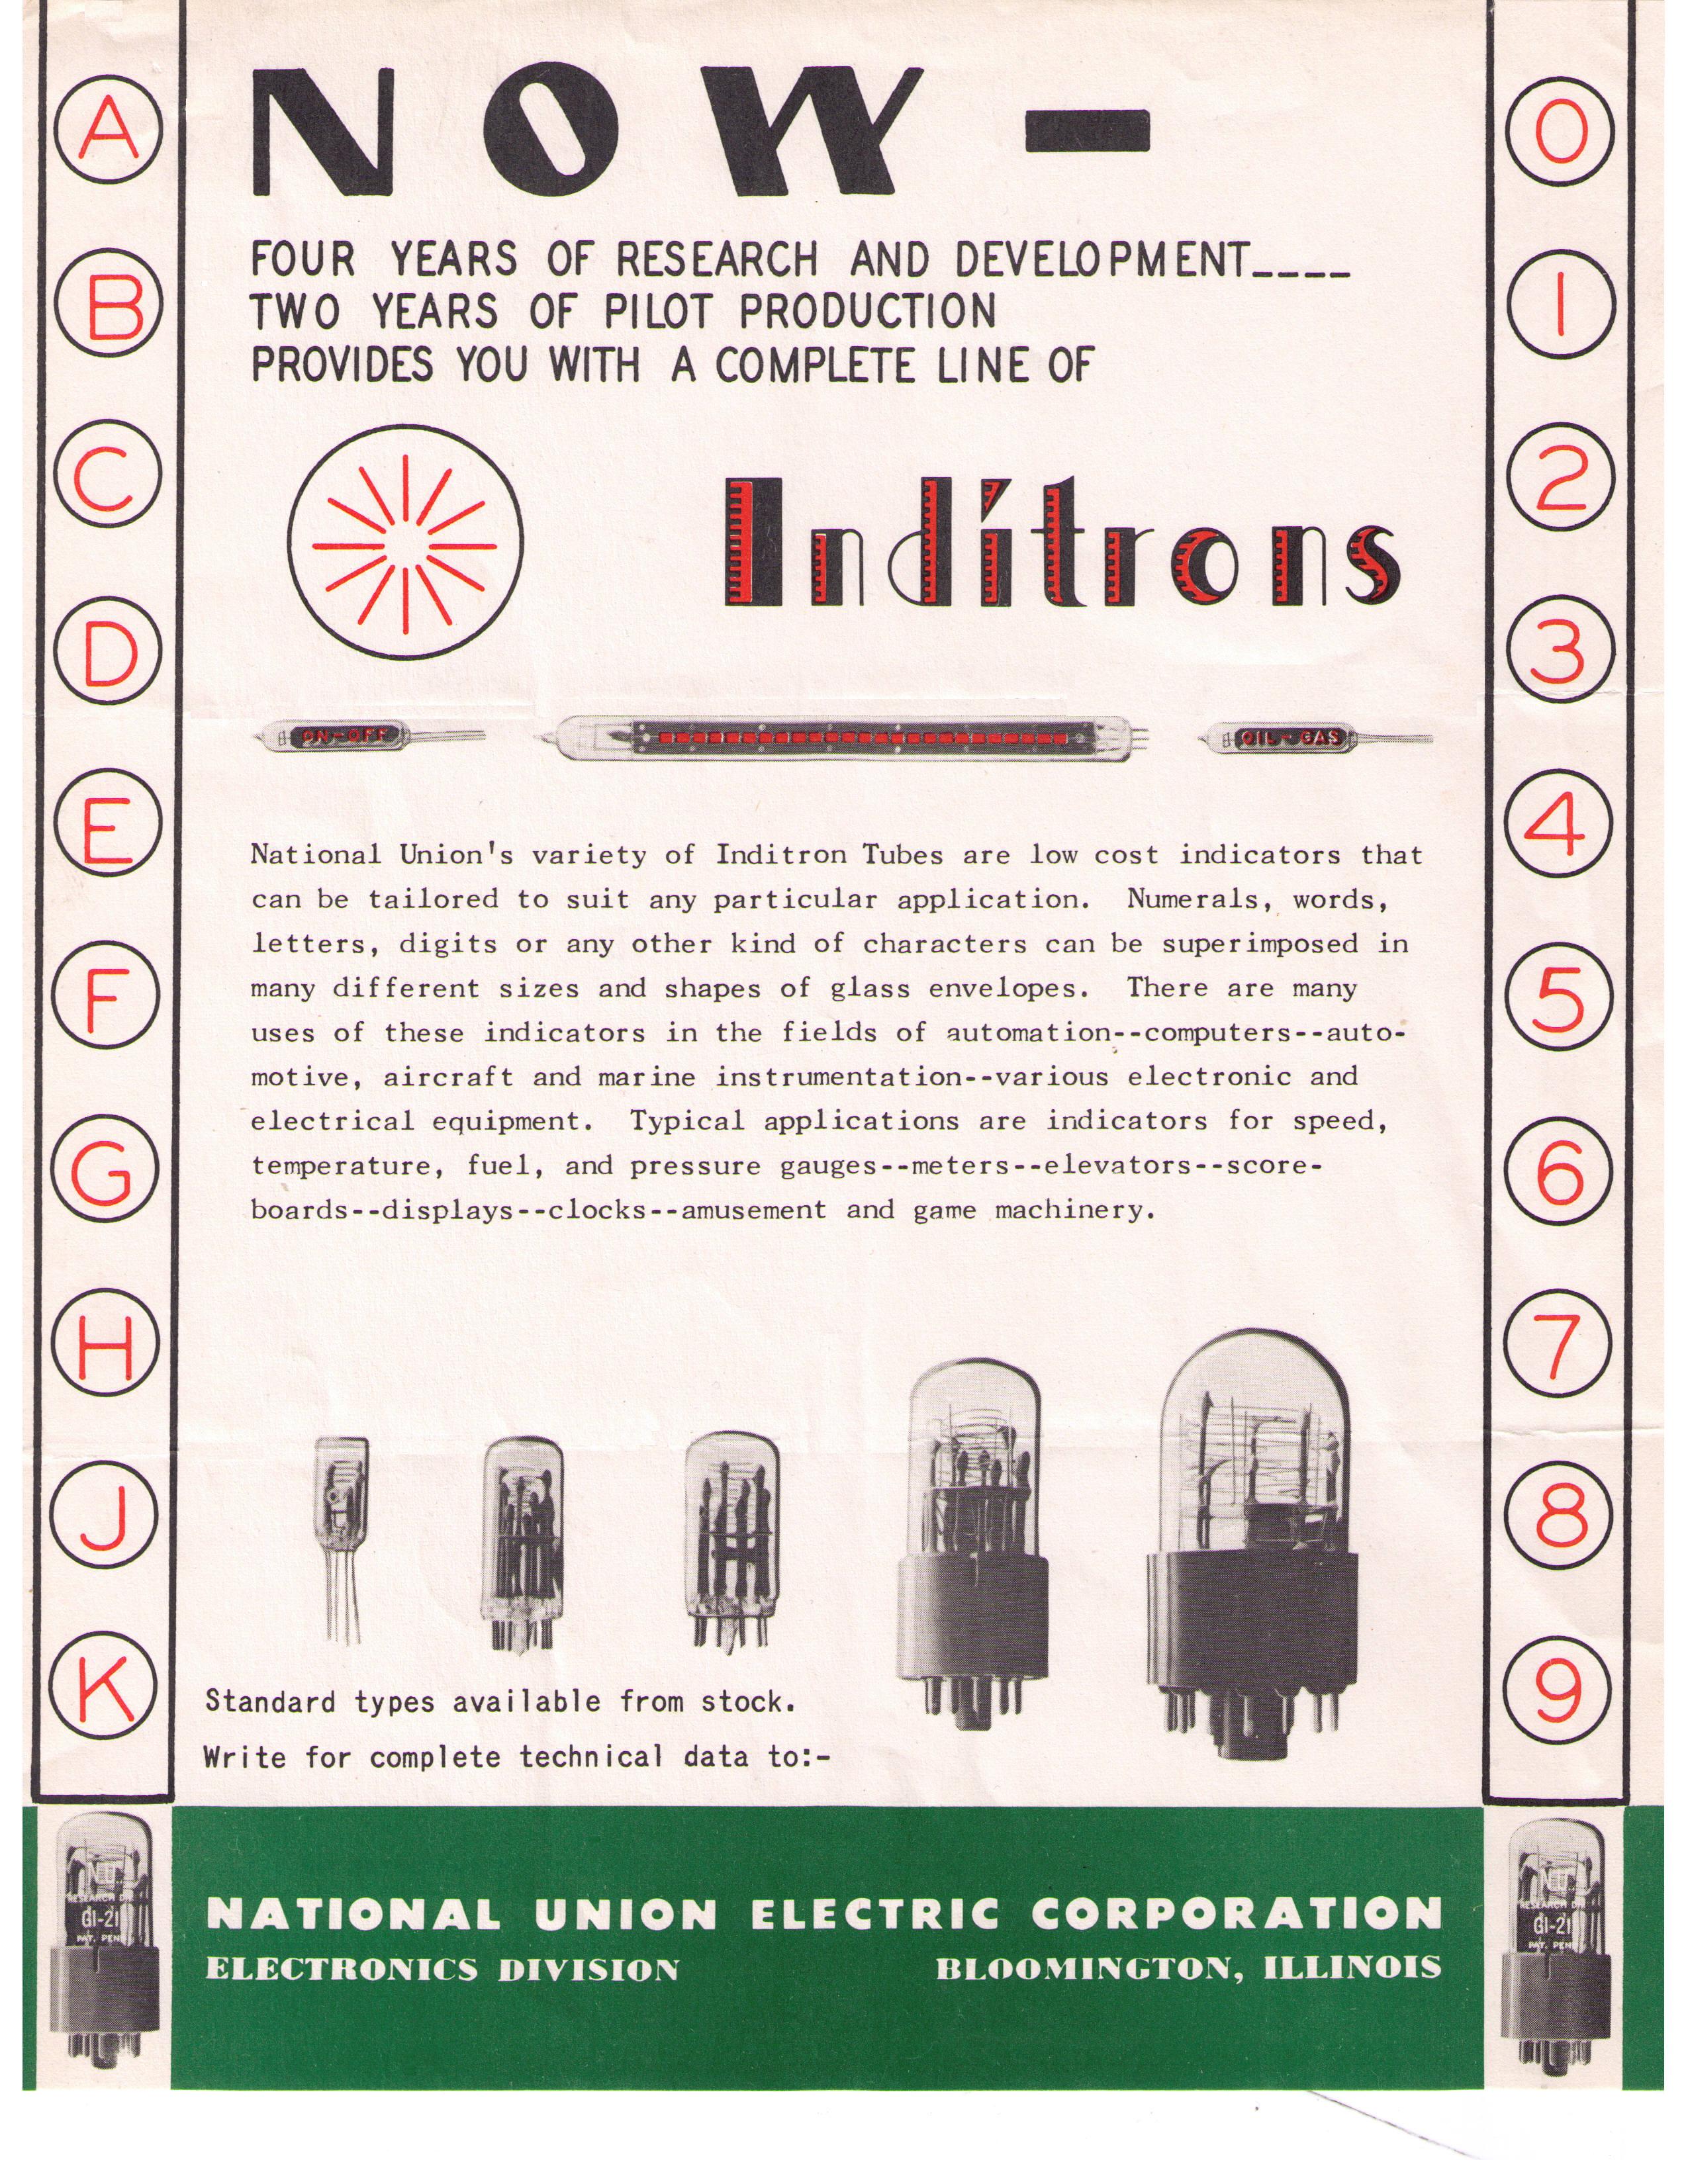 Das Inditron Promo-Sheet von National Union